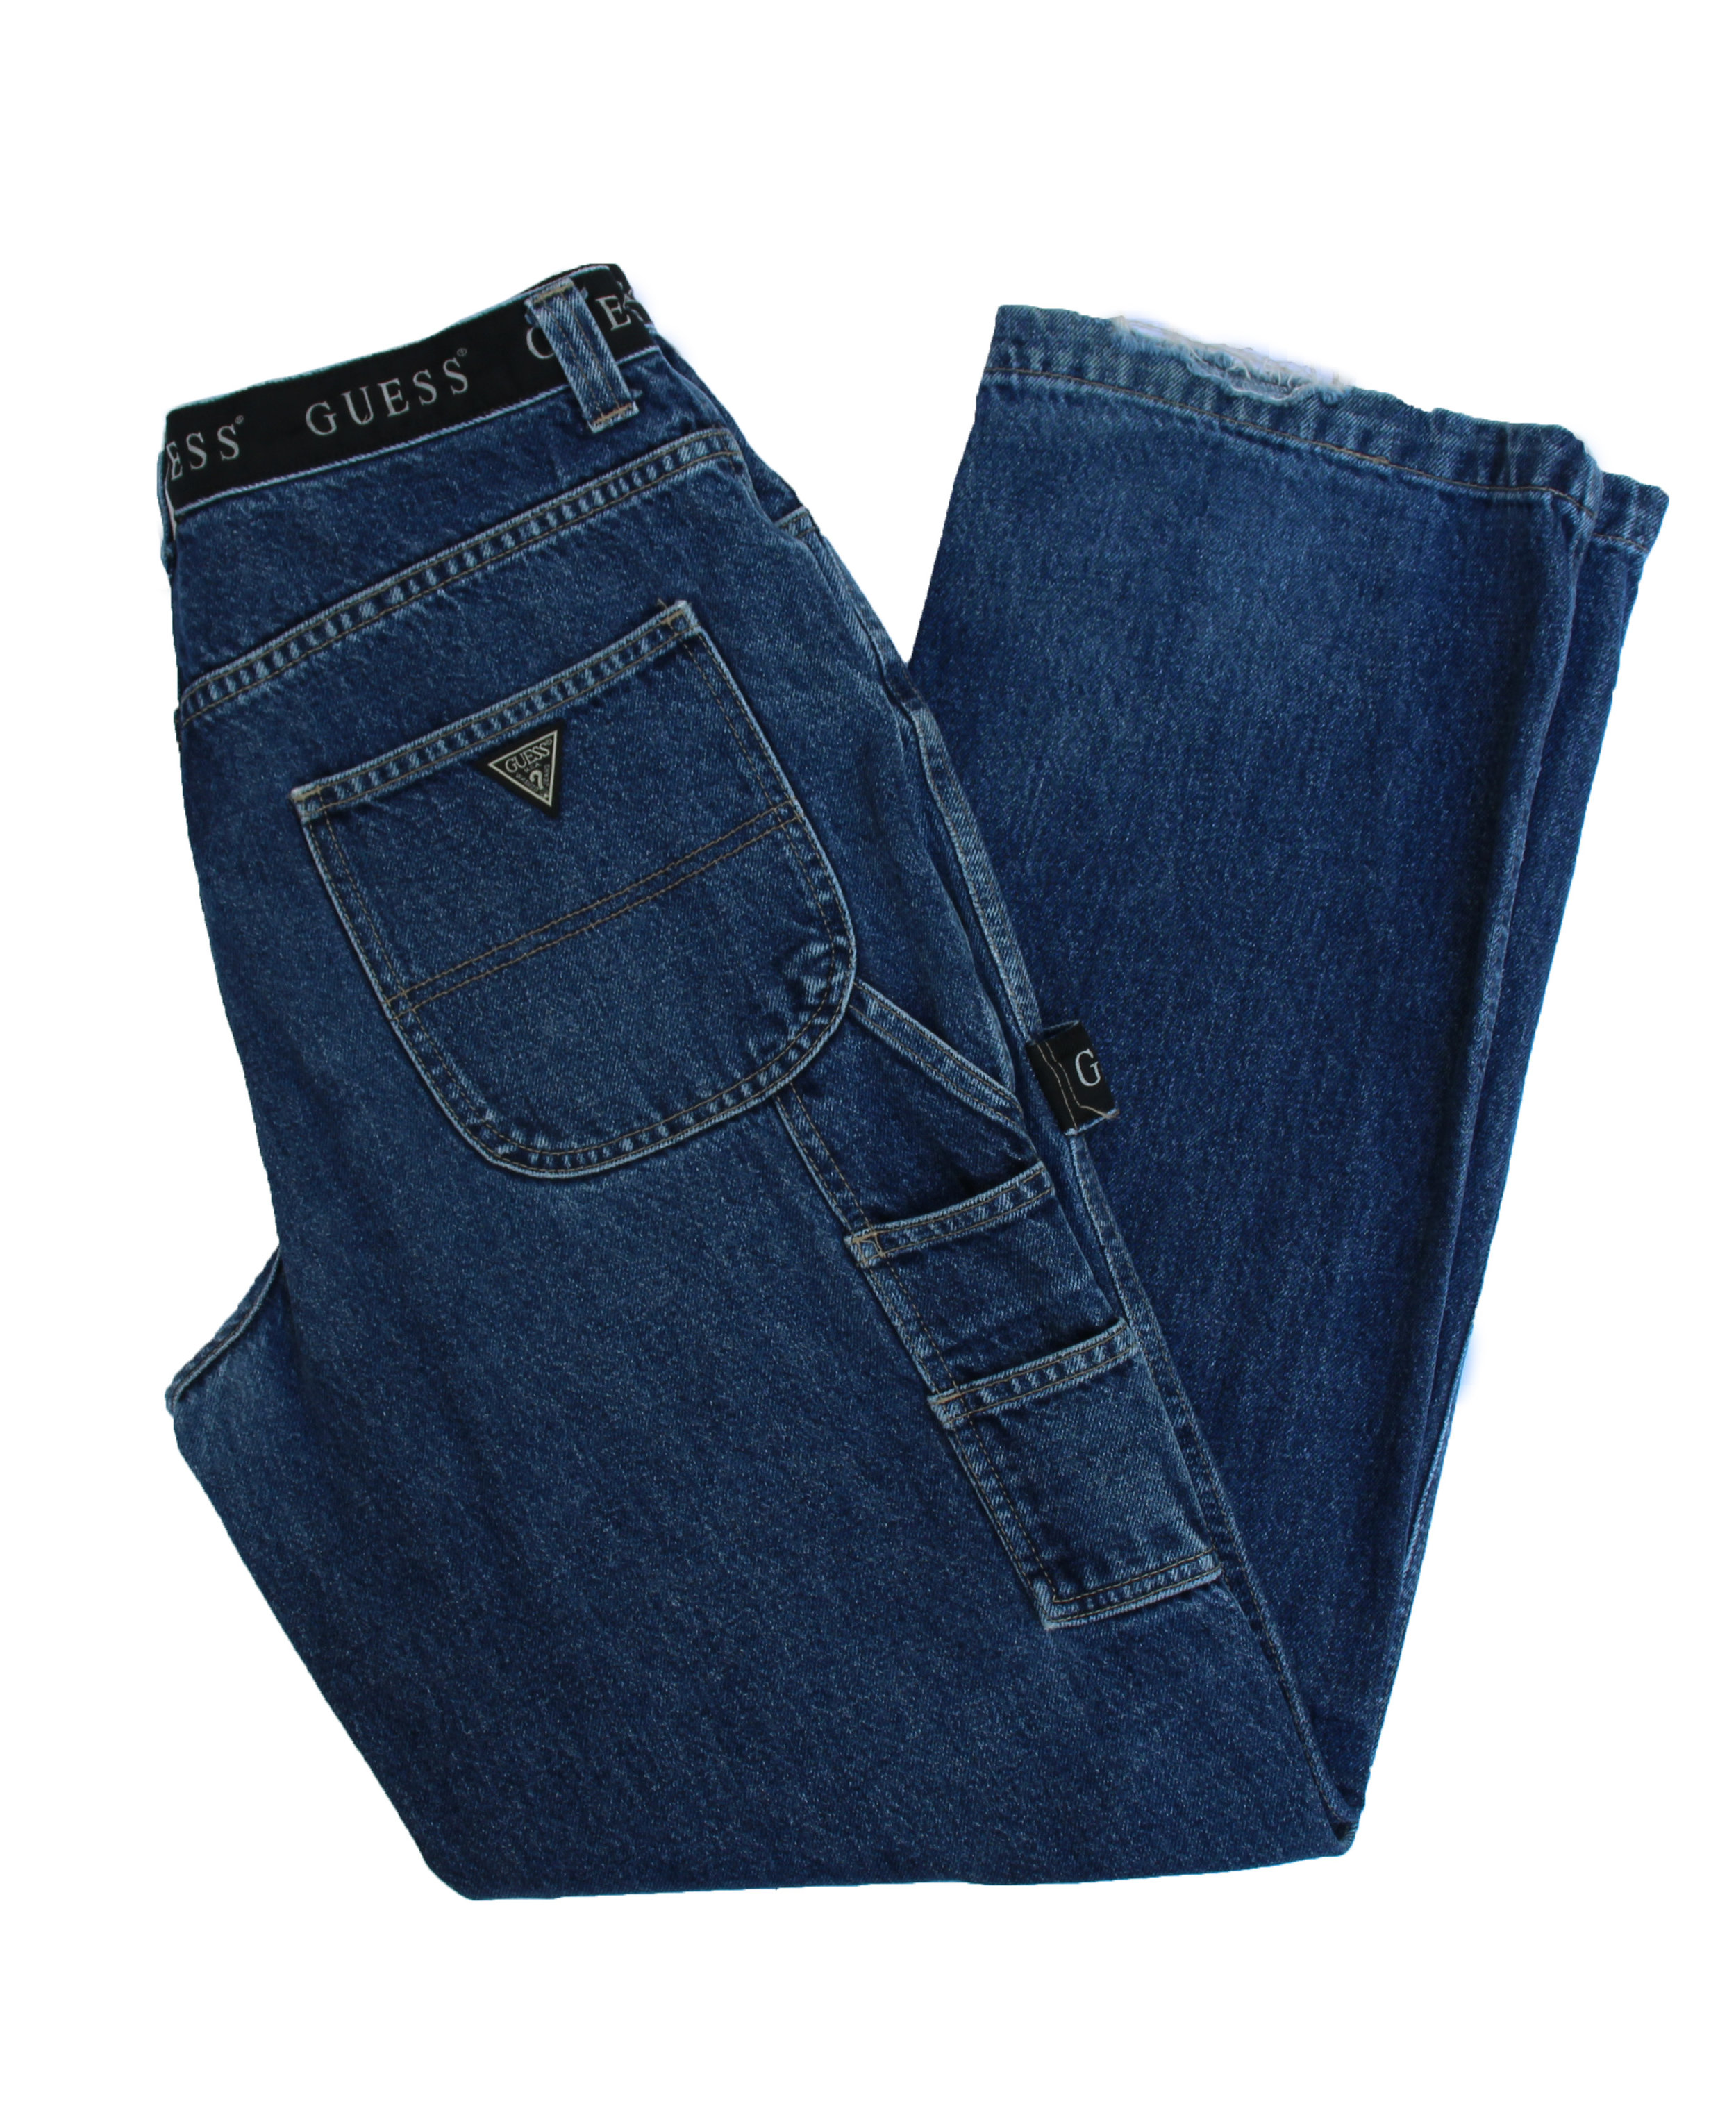 Vintage Guess Carpenter Jeans (Size 34 x 34) — Roots